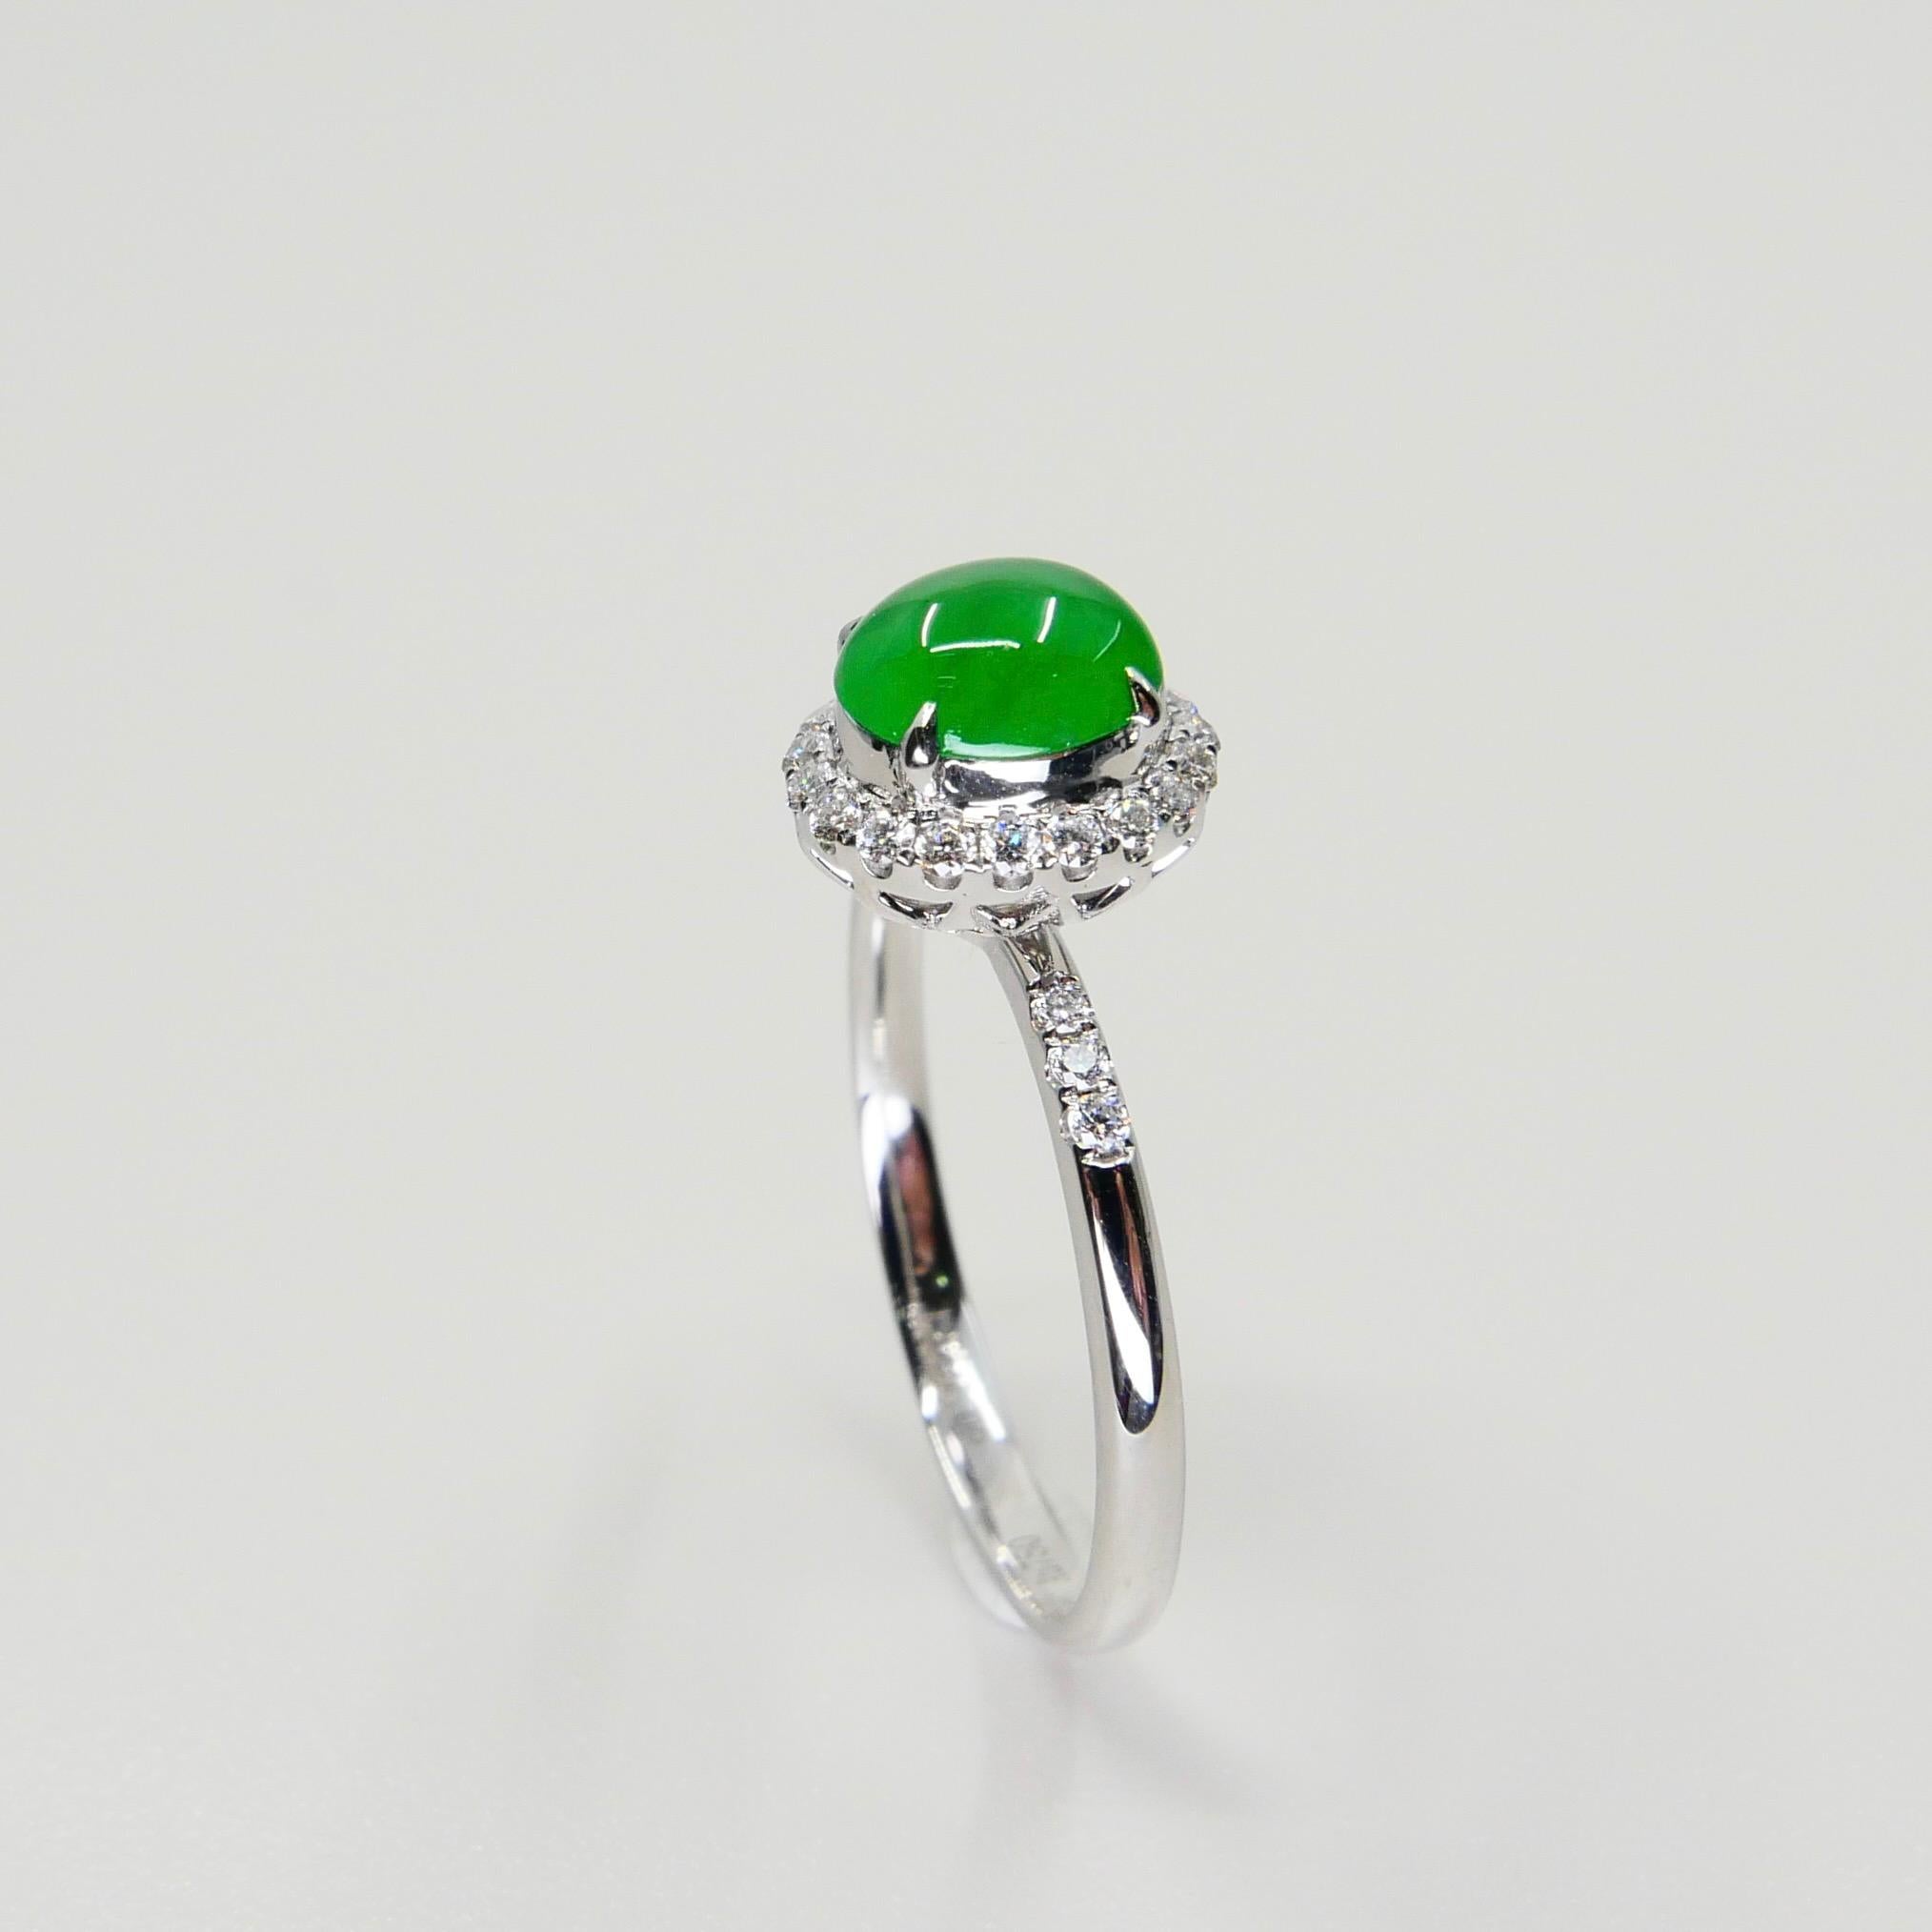 Zertifizierter Jade- und Diamantring, fast kaiserlich-grüne Farbe, Dainty, herrlich glänzend im Angebot 2